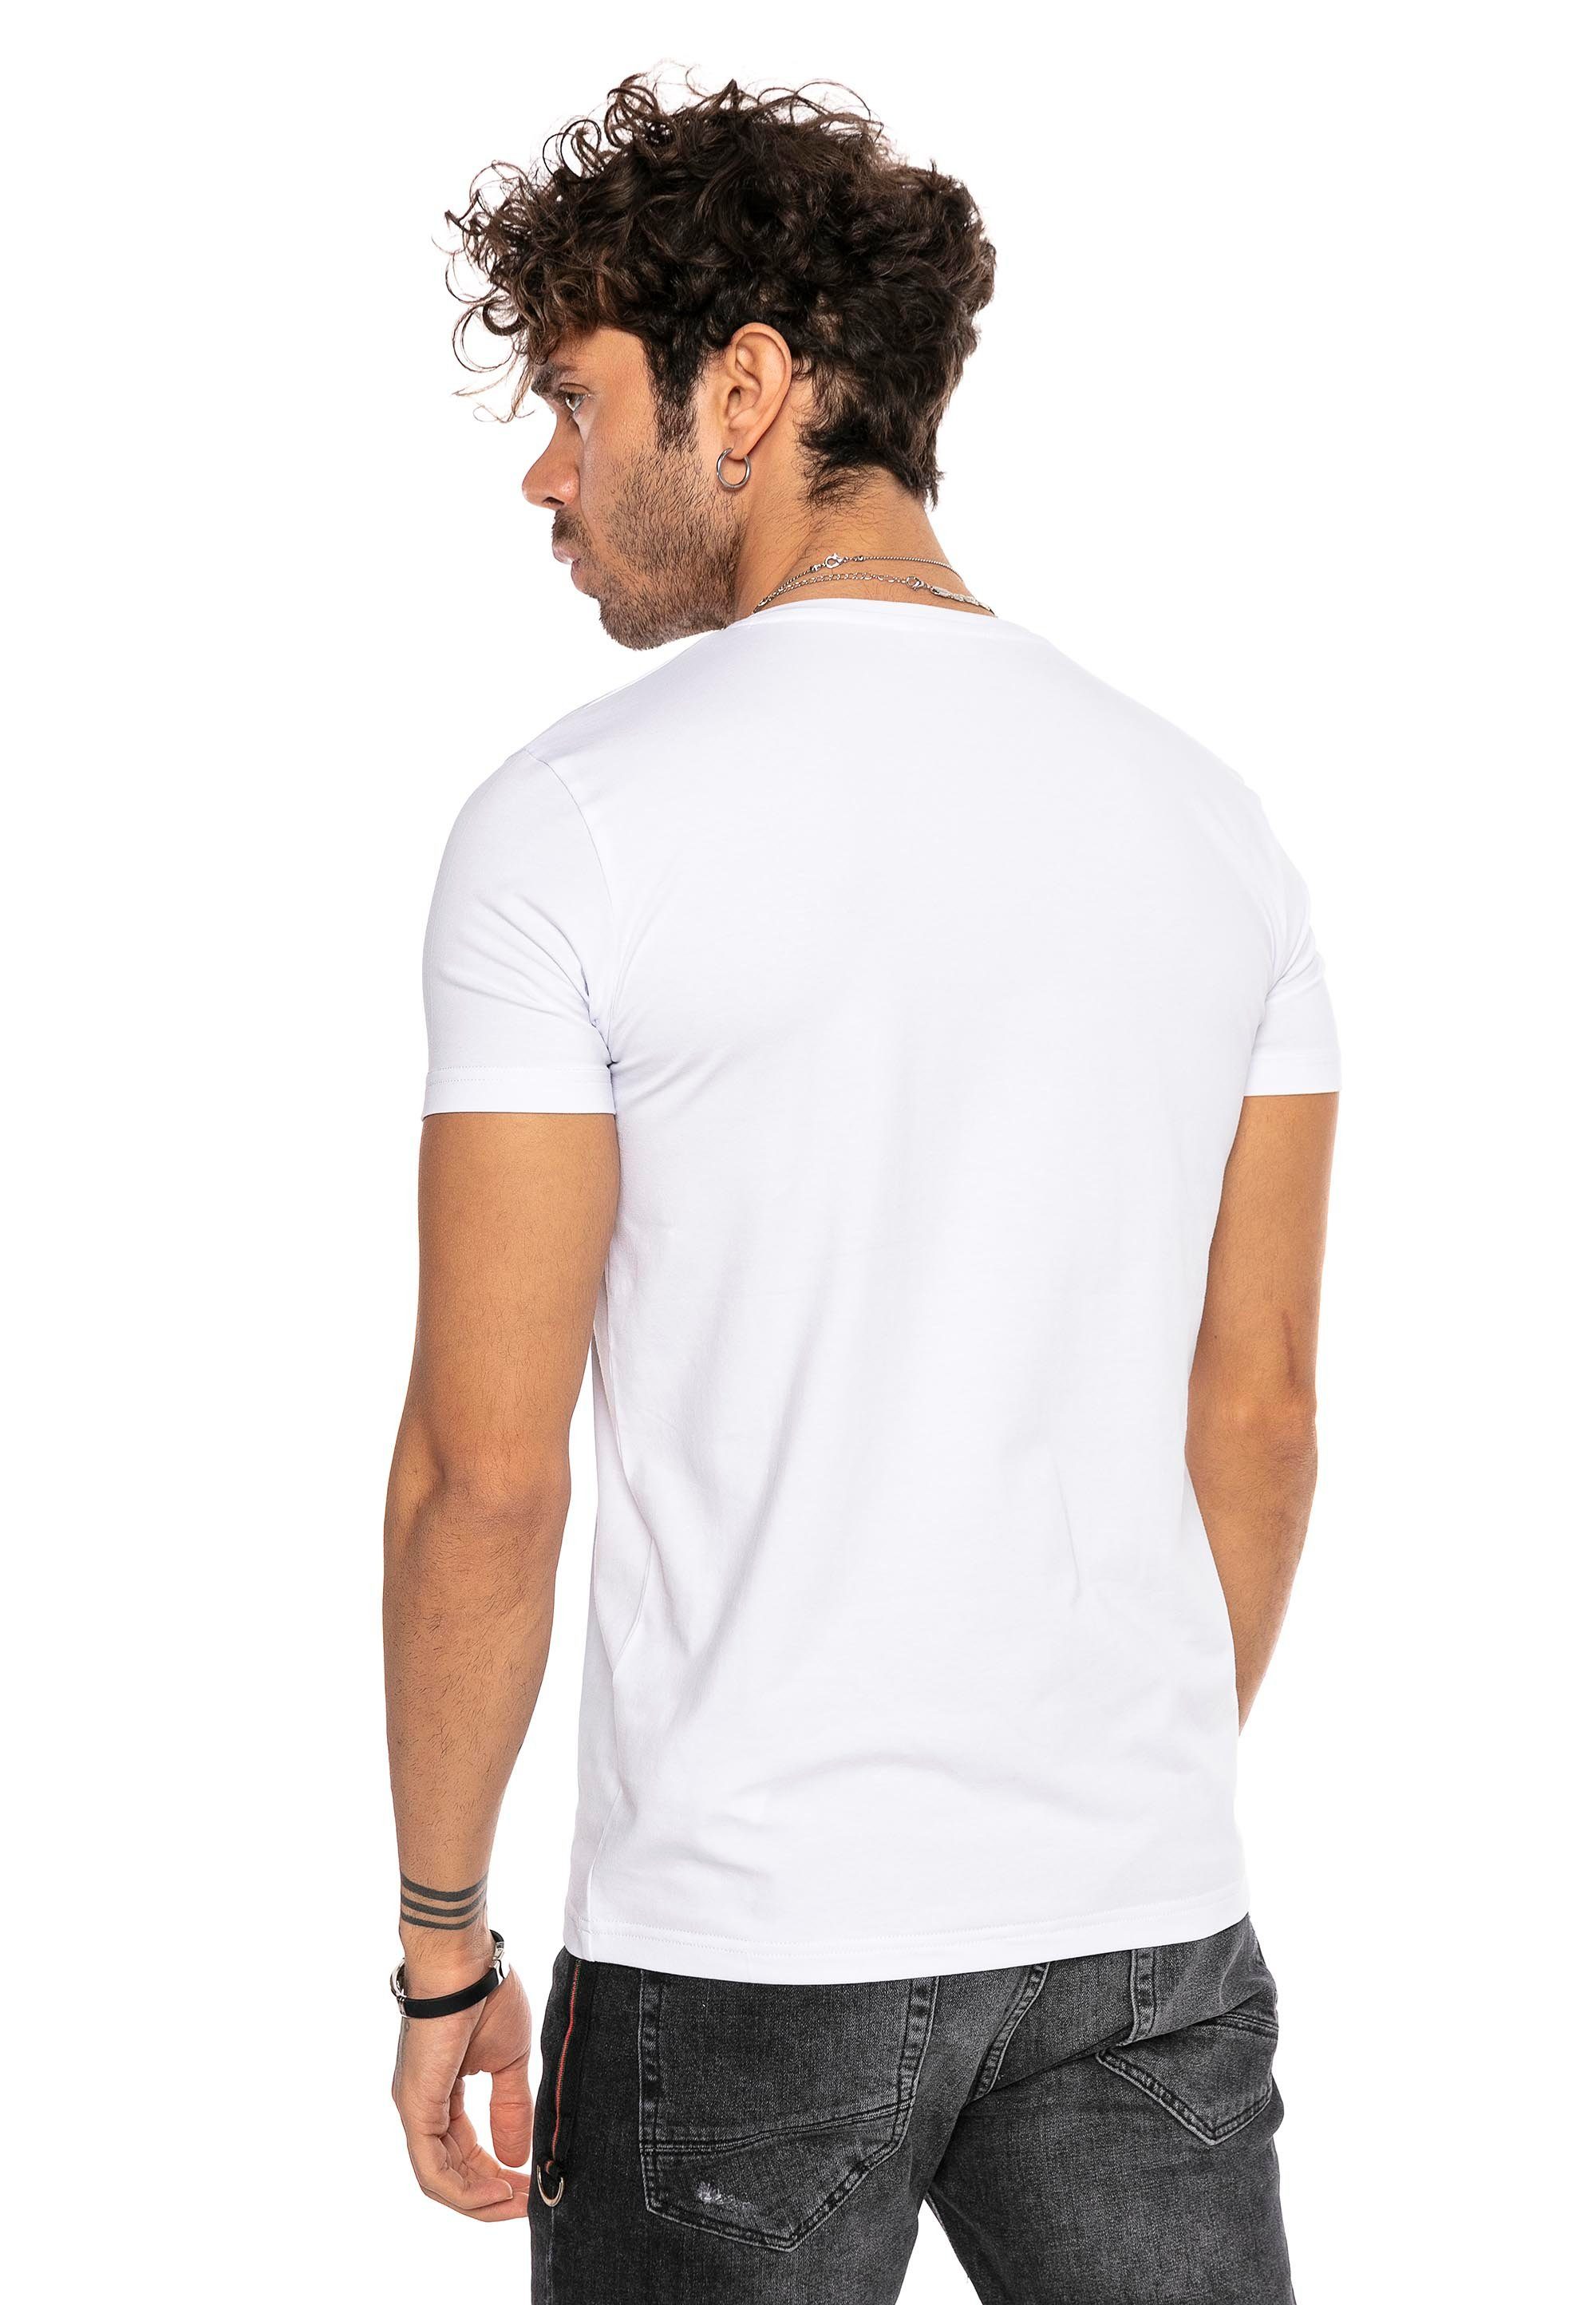 RedBridge T-Shirt Dange mit weiß V-Ausschnitt modischem